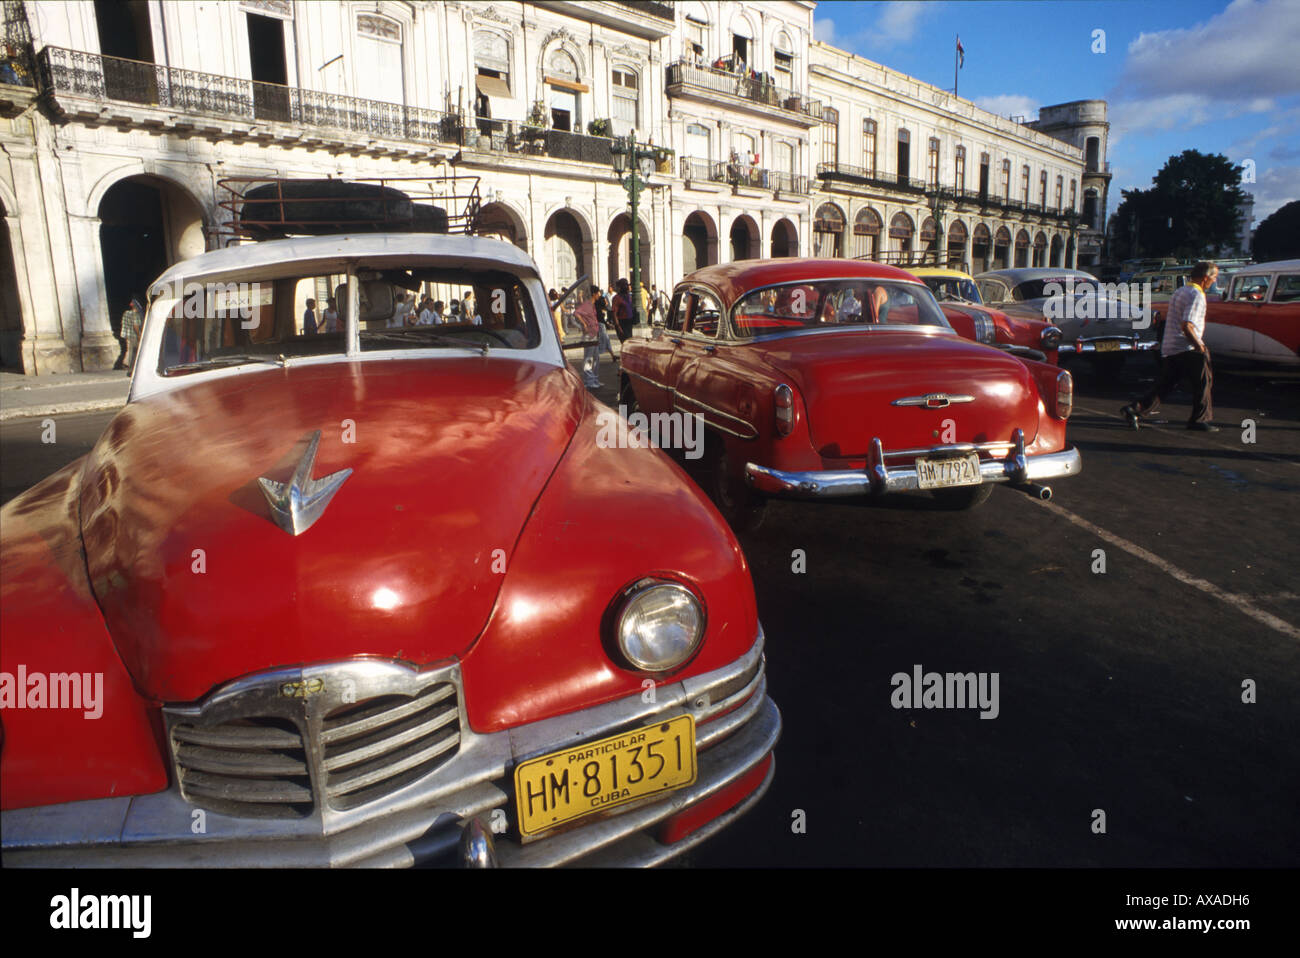 Oldtimer-Taxi, Prado, Havanna Kuba, Suedamerika Foto Stock